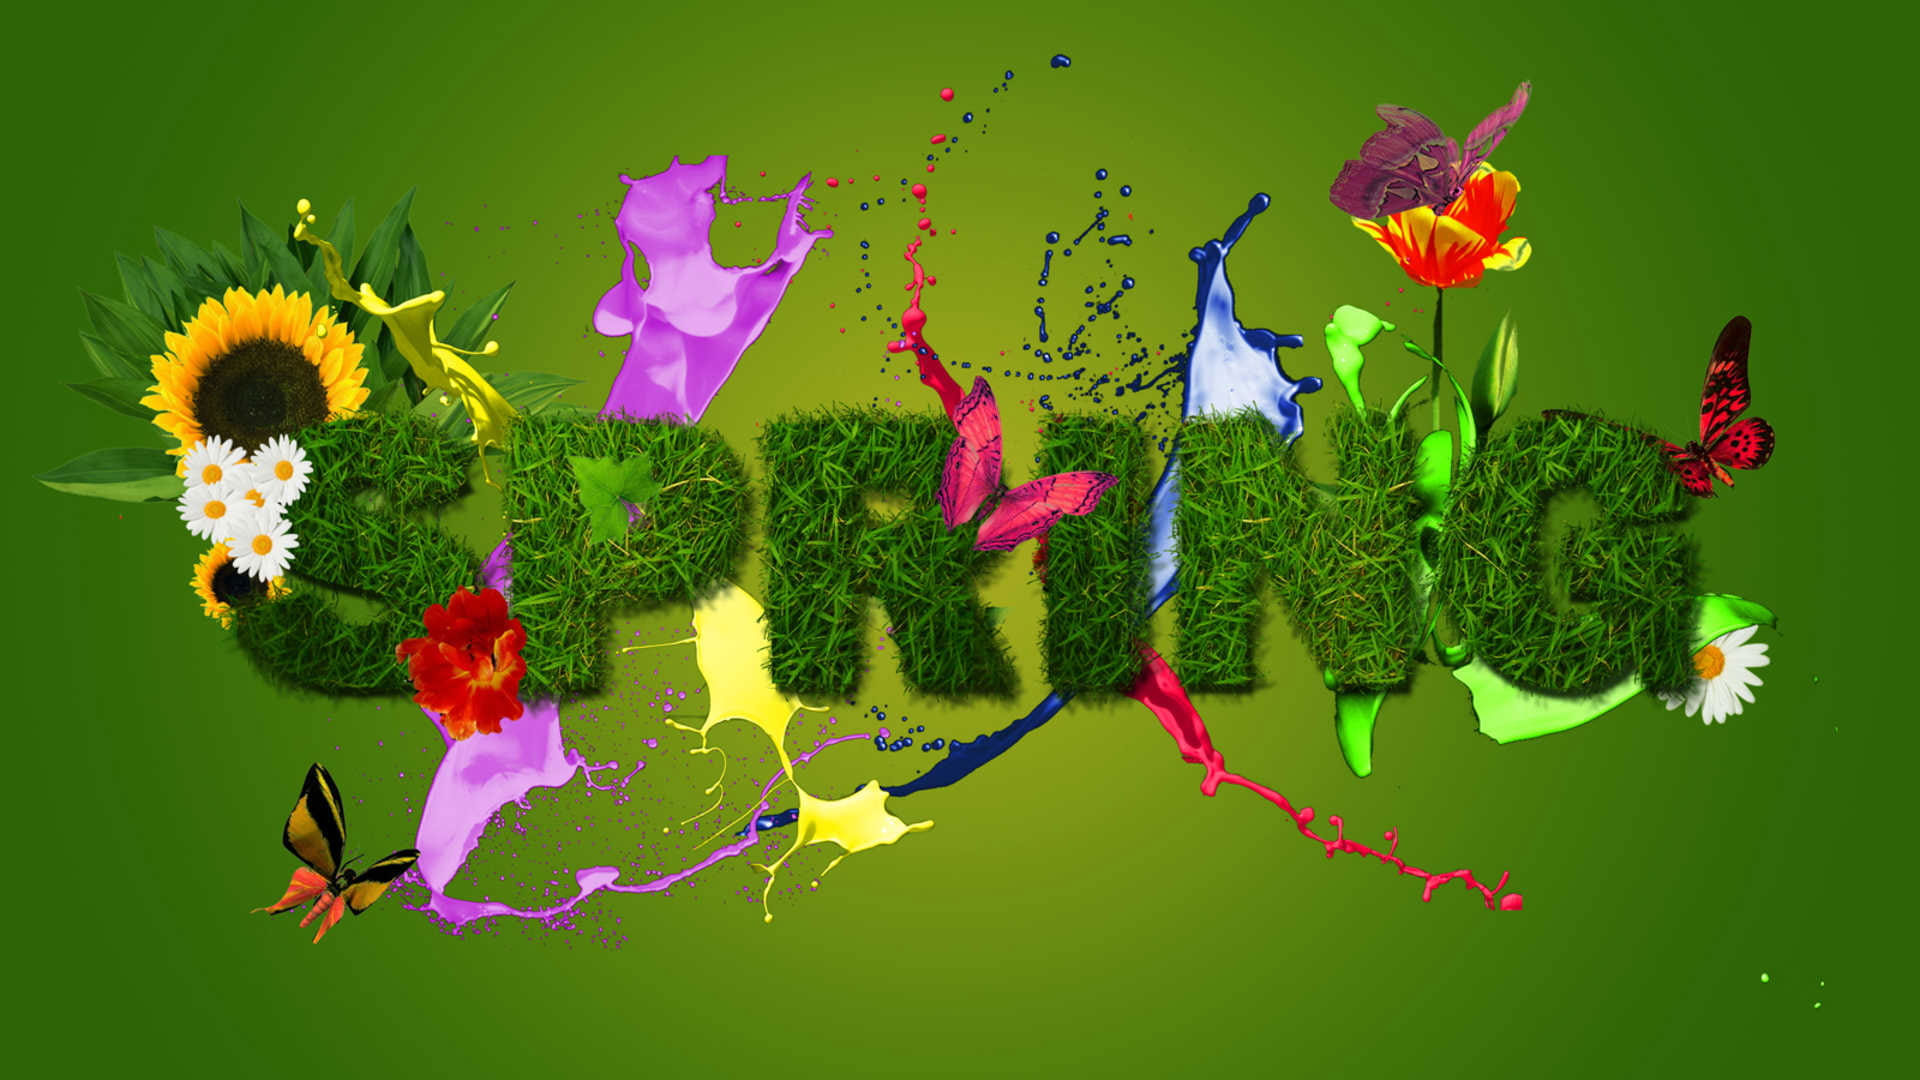 Flower wallpaper, plant, leaf, decoration, spring, season, design, summer